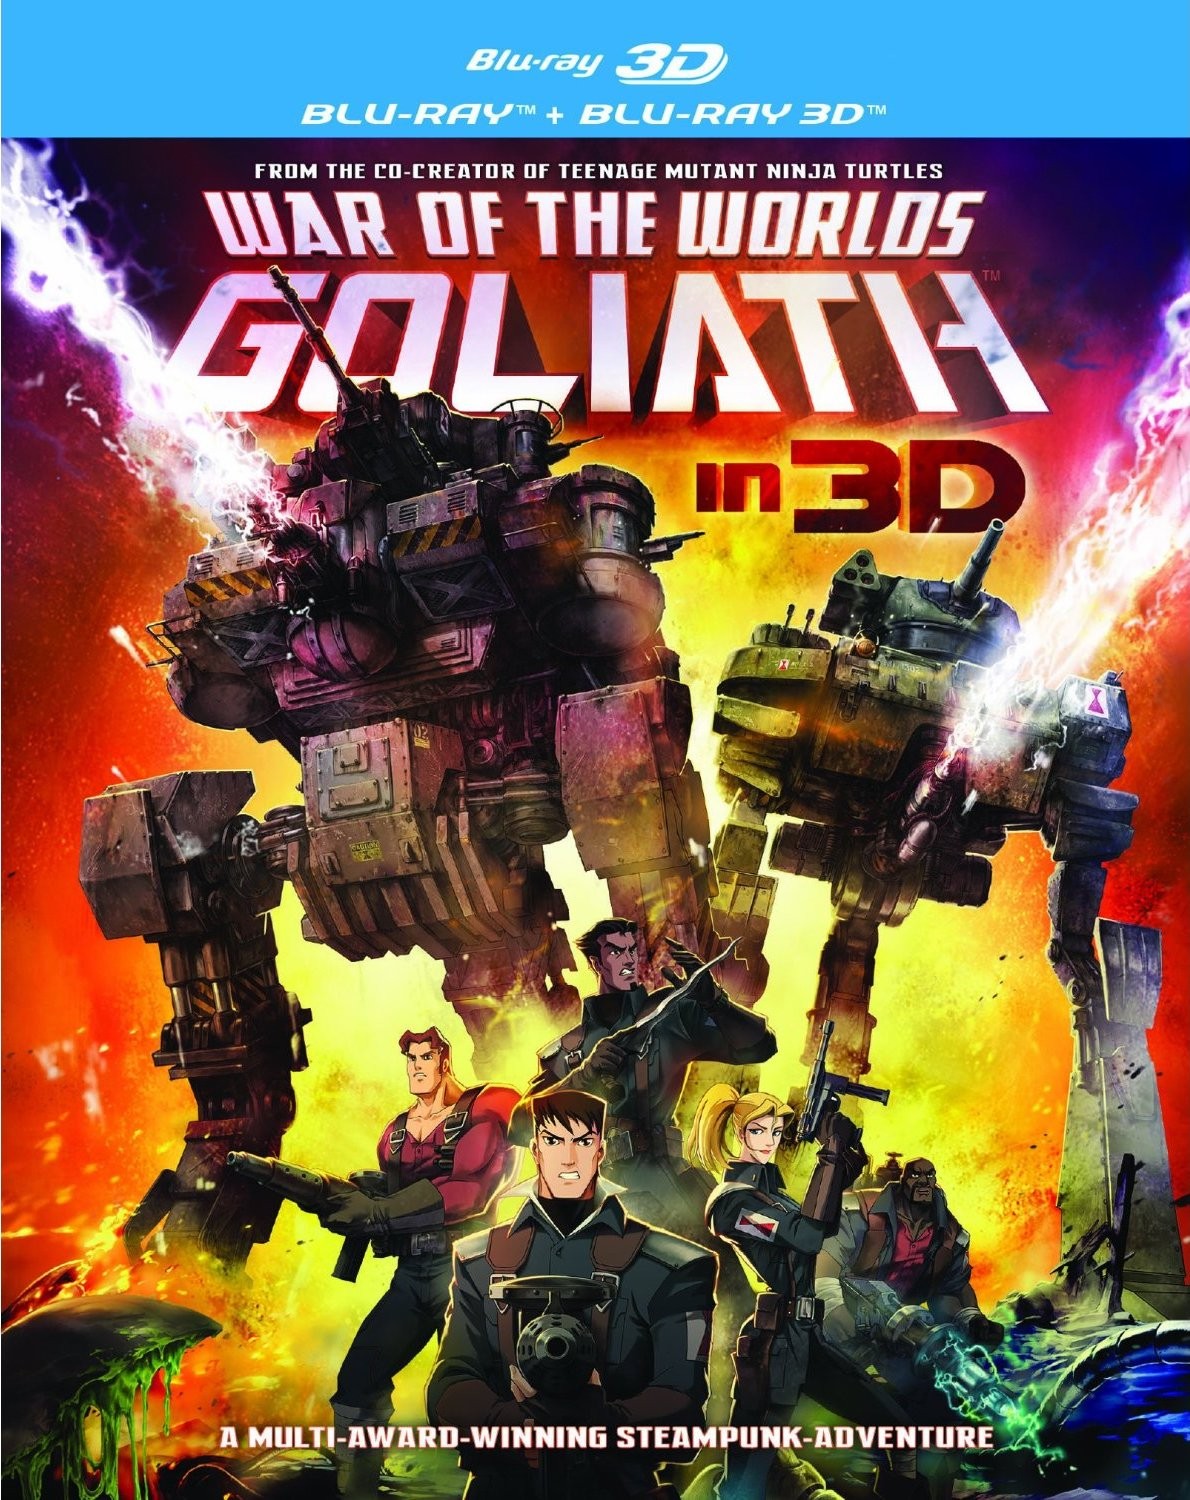  世界大战 歌利亚 War of the Worlds: Goliath (2012) 51-053 